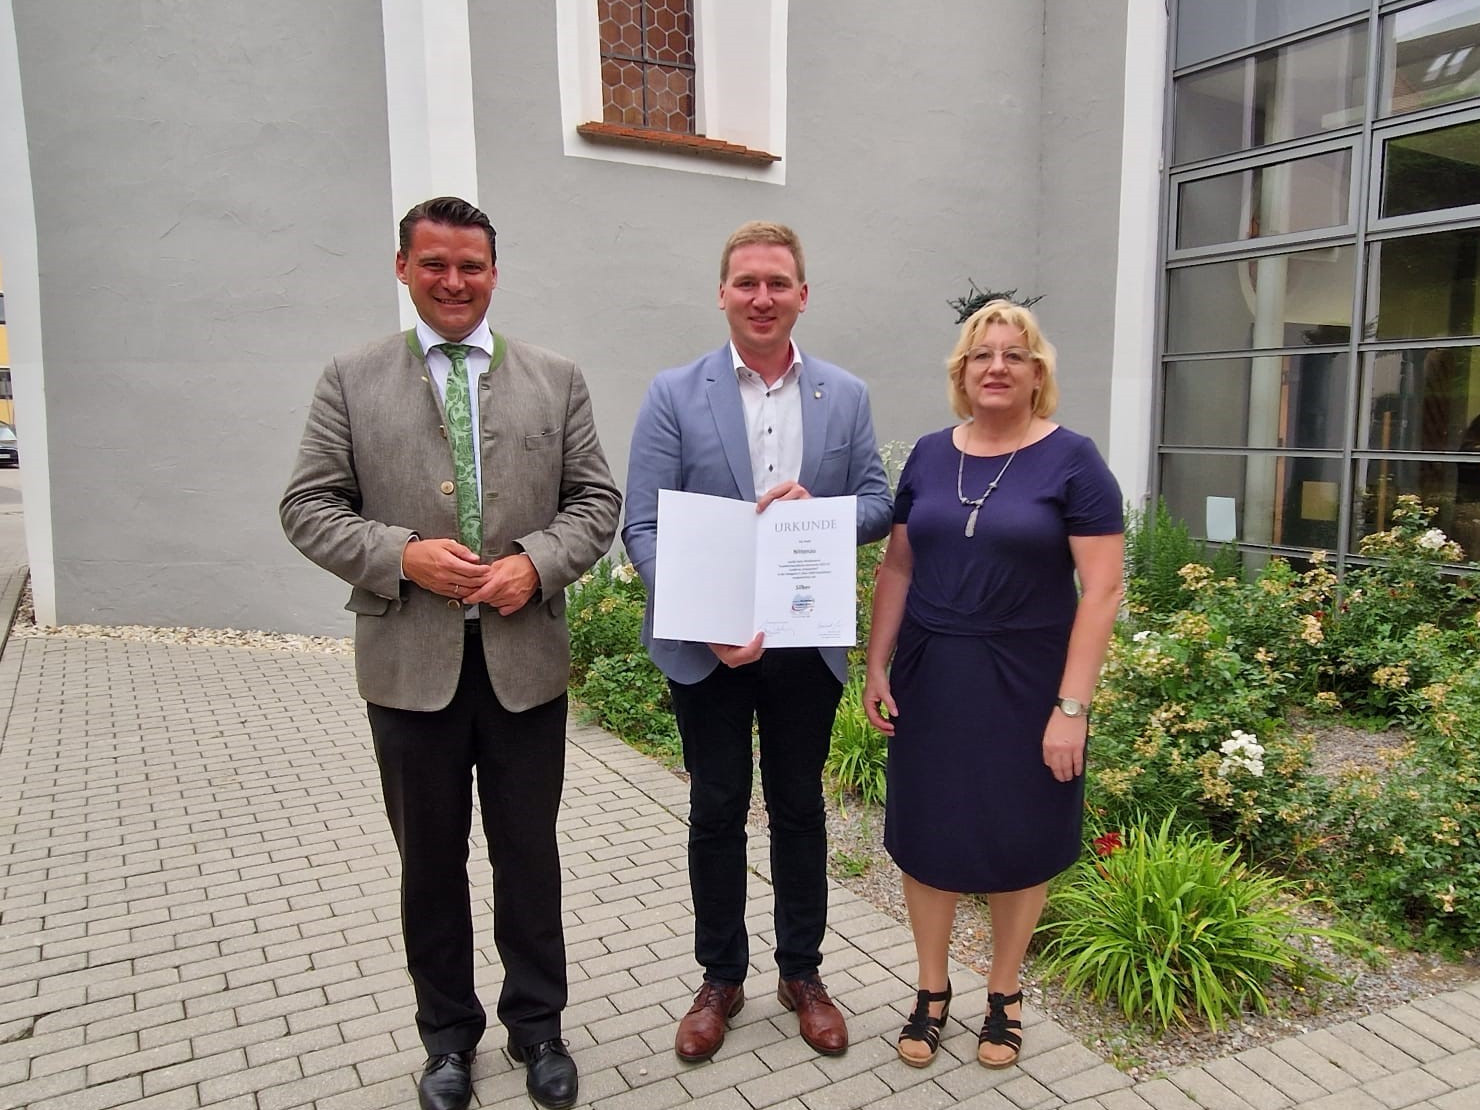 Landrat Thomas Ebeling überreicht die Urkunde für die familienfreundliche Kommune an Ersten Bürgermeister Benjamin Boml und Familienbeauftragte Elisabeth Bauer